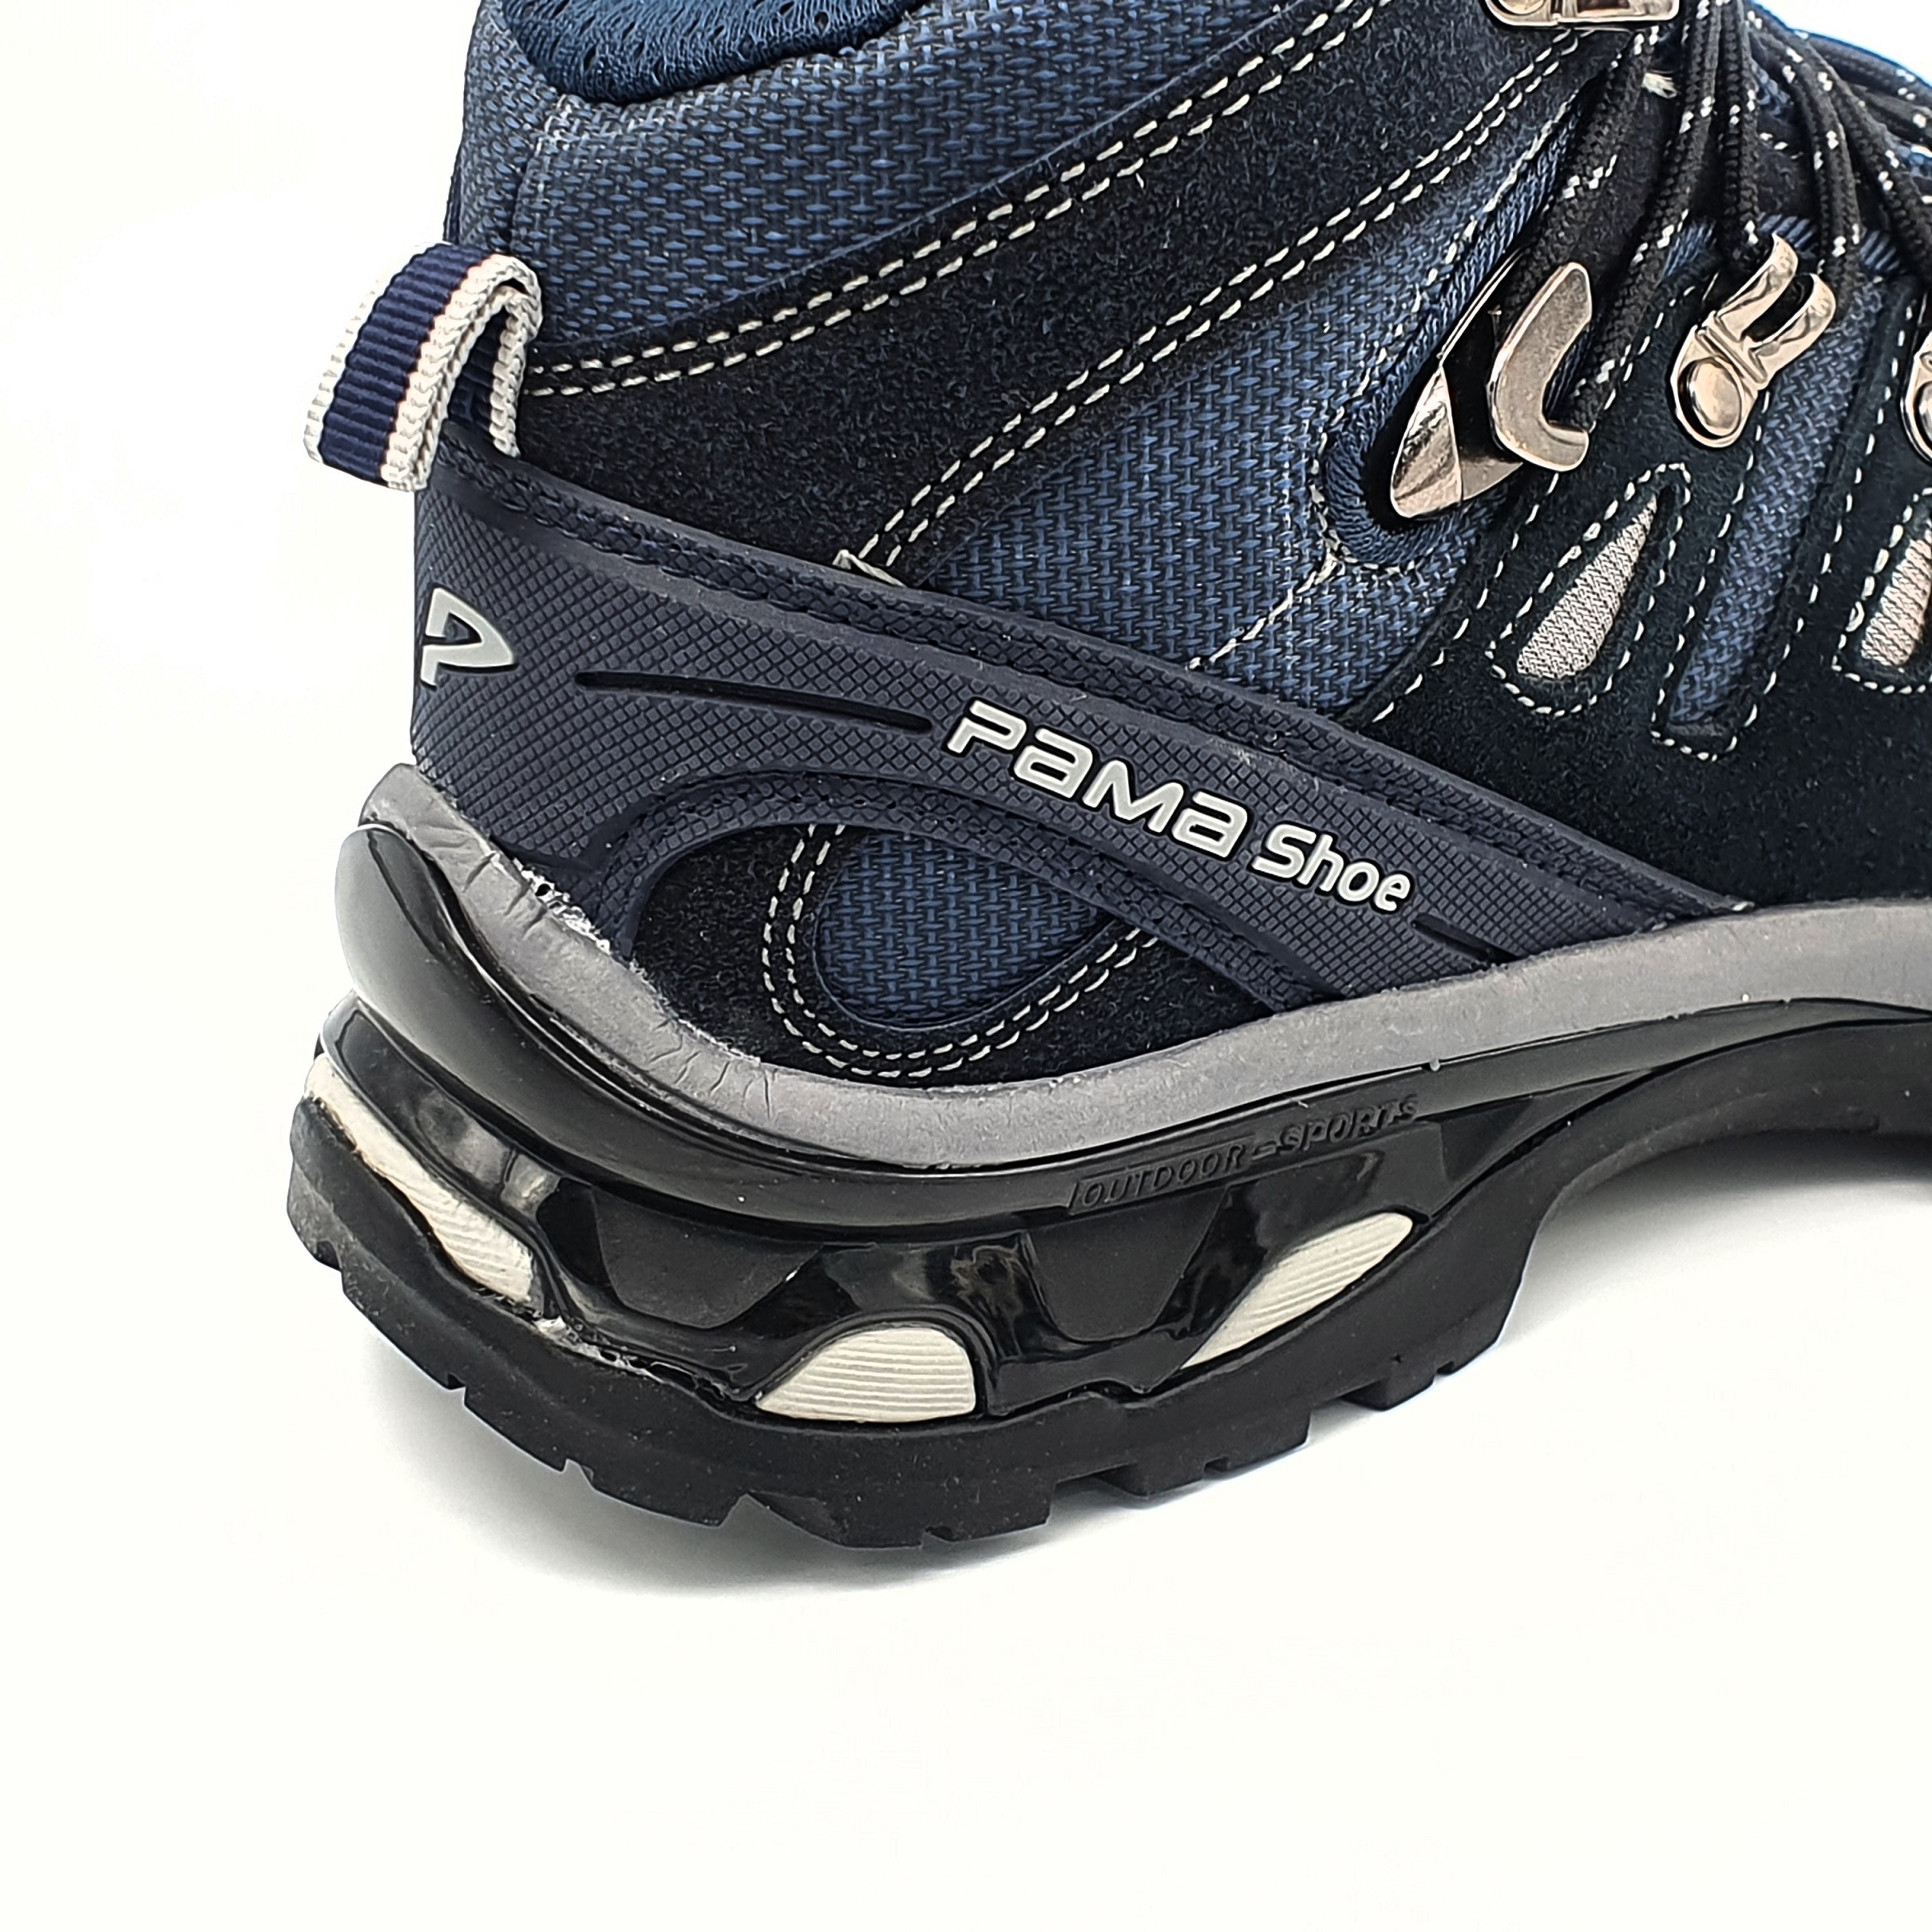 کفش کوهنوردی مردانه پاما مدل NBS-829 کد 2-G1630 -  - 10